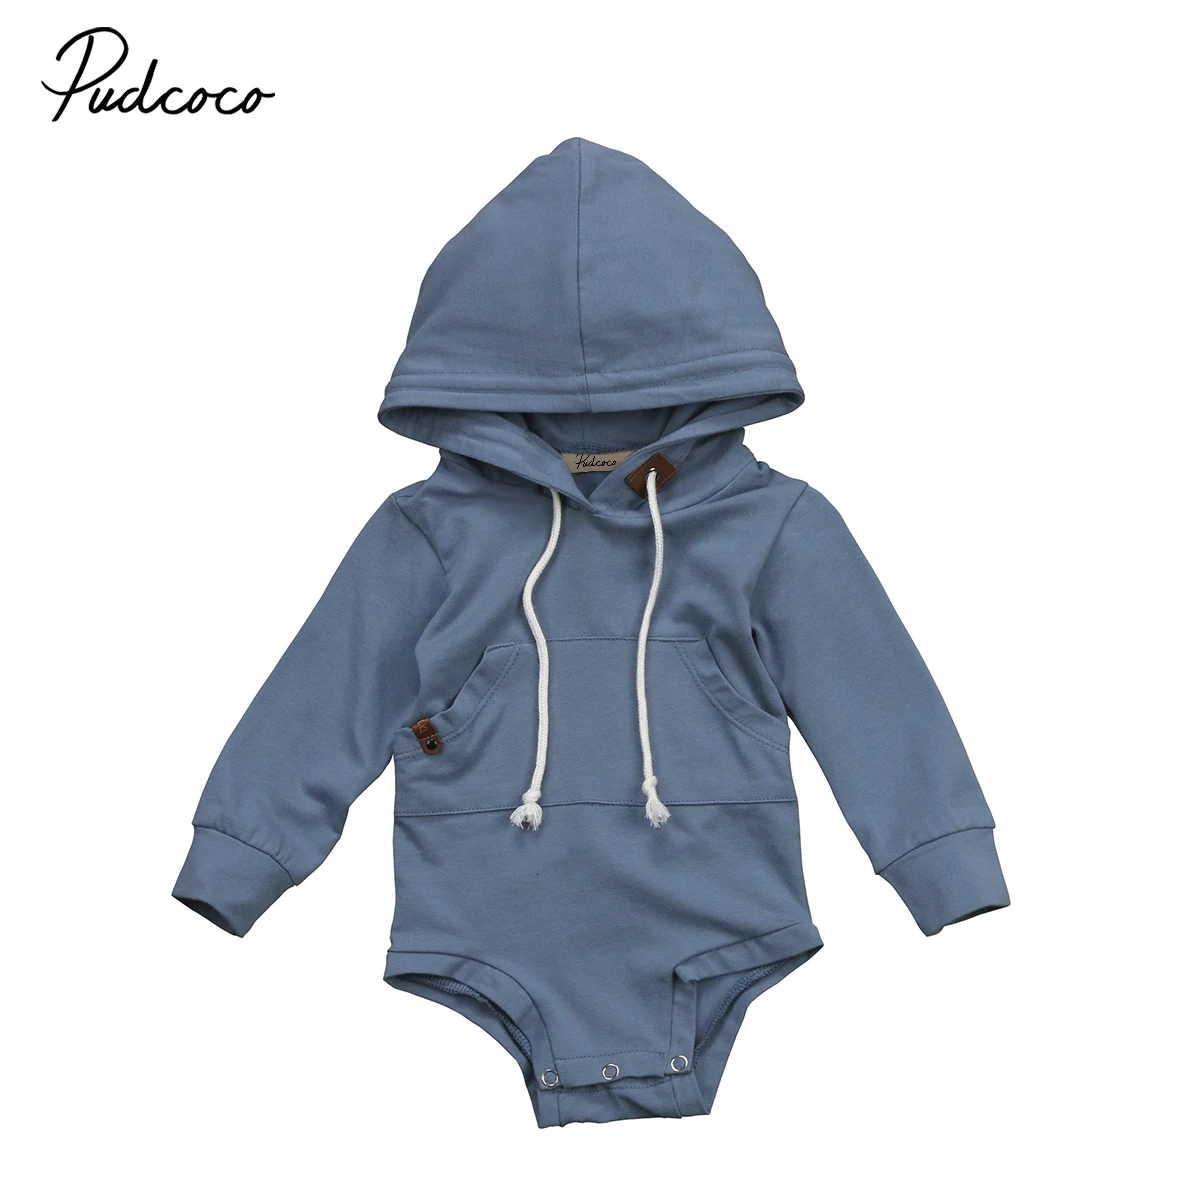 Pudcoco-vêtements pour bébés garçons | Bleu, manches longues, sweat-shirt à capuche en coton, body 0-24m